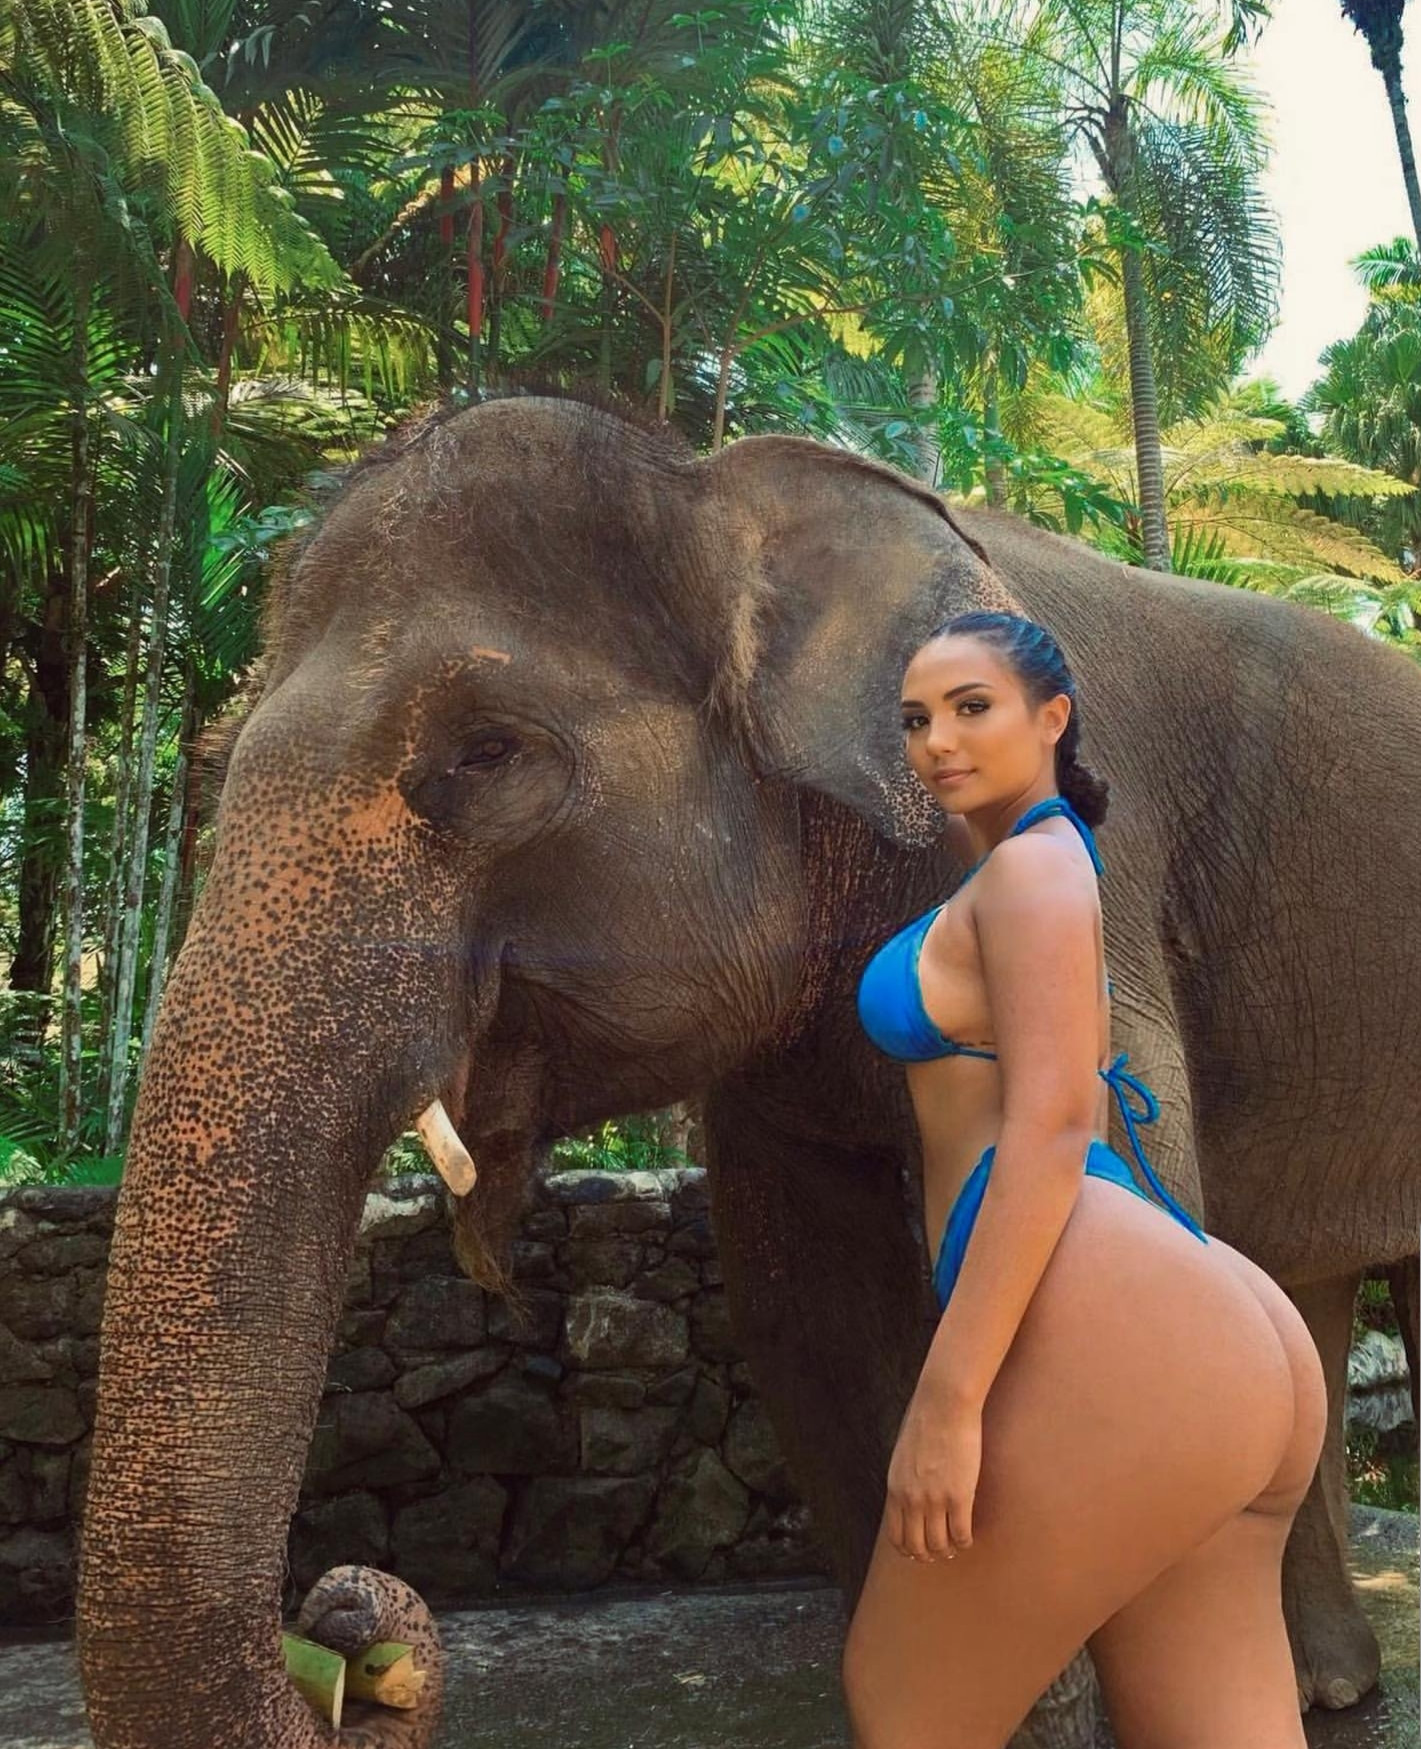 Porno elephant Porn Elephant